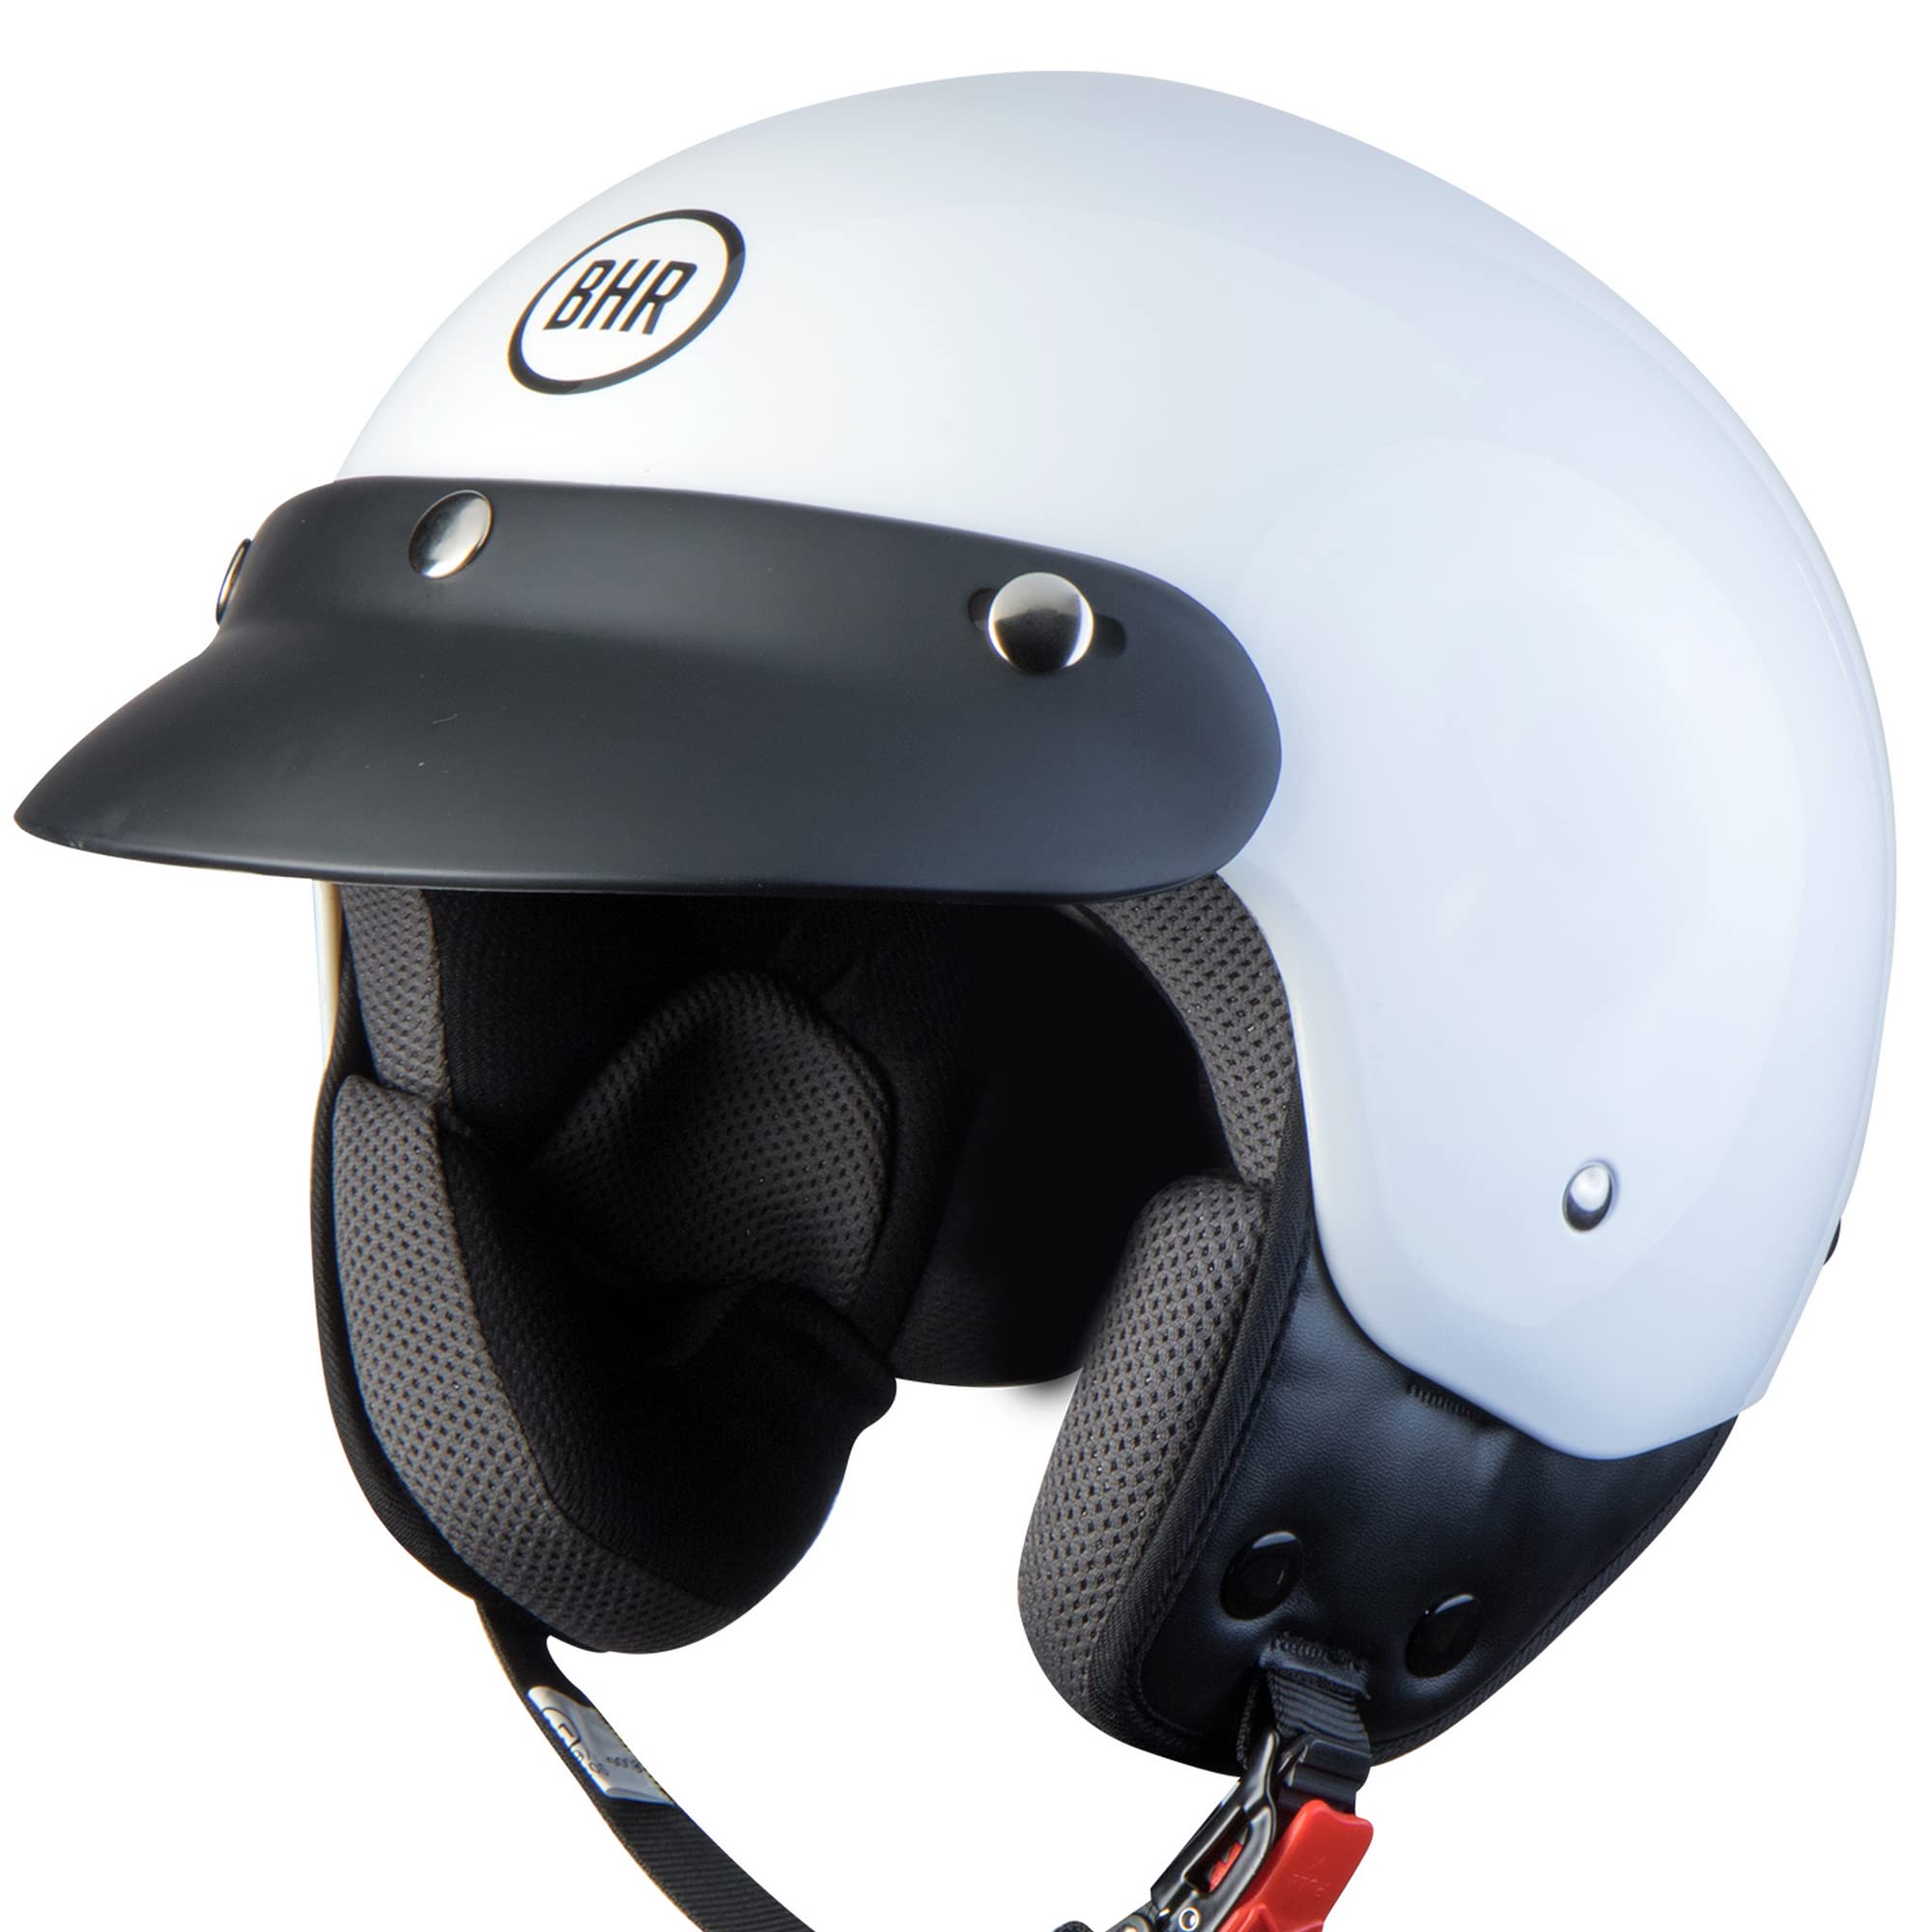 BHR Demi-Jet Helm 803 SIMPLY, Praktischer Rollerhelm mit ECE-Zulassung, Motorrad-Jet-Helm mit abnehmbarem Gesichtspolster, WEISS, L